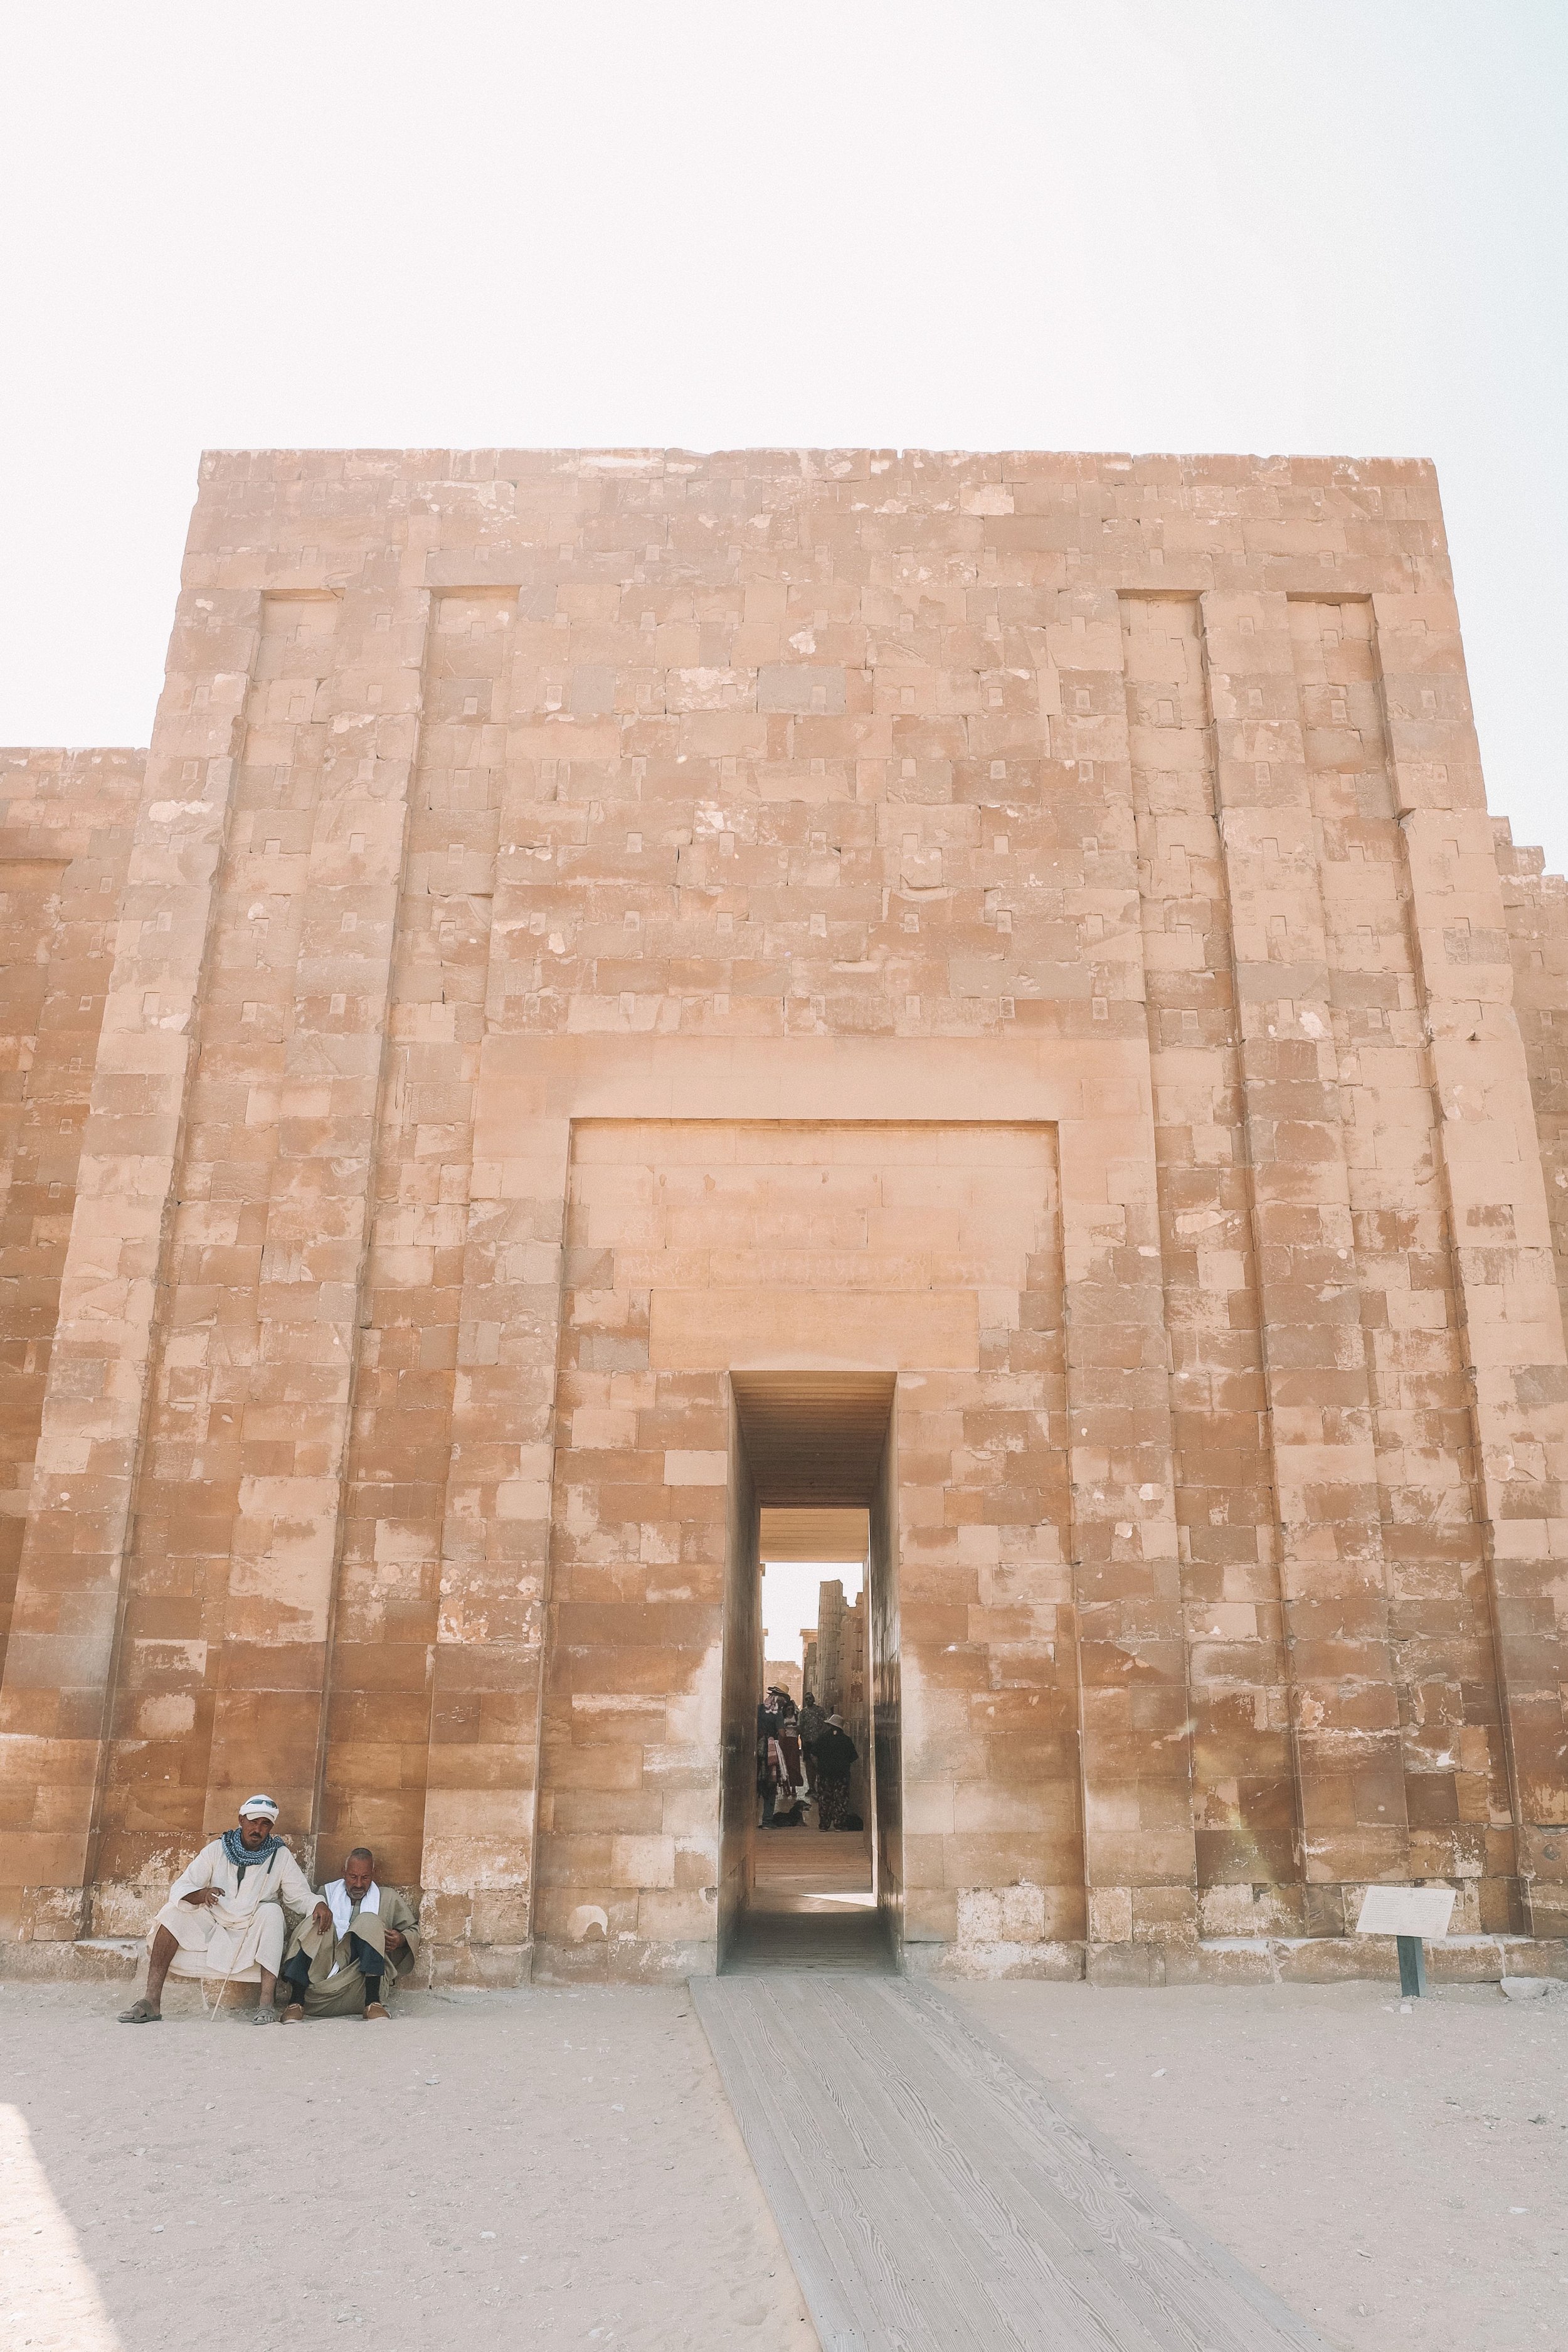 The main entrance of Saqqara - Cairo - Egypt